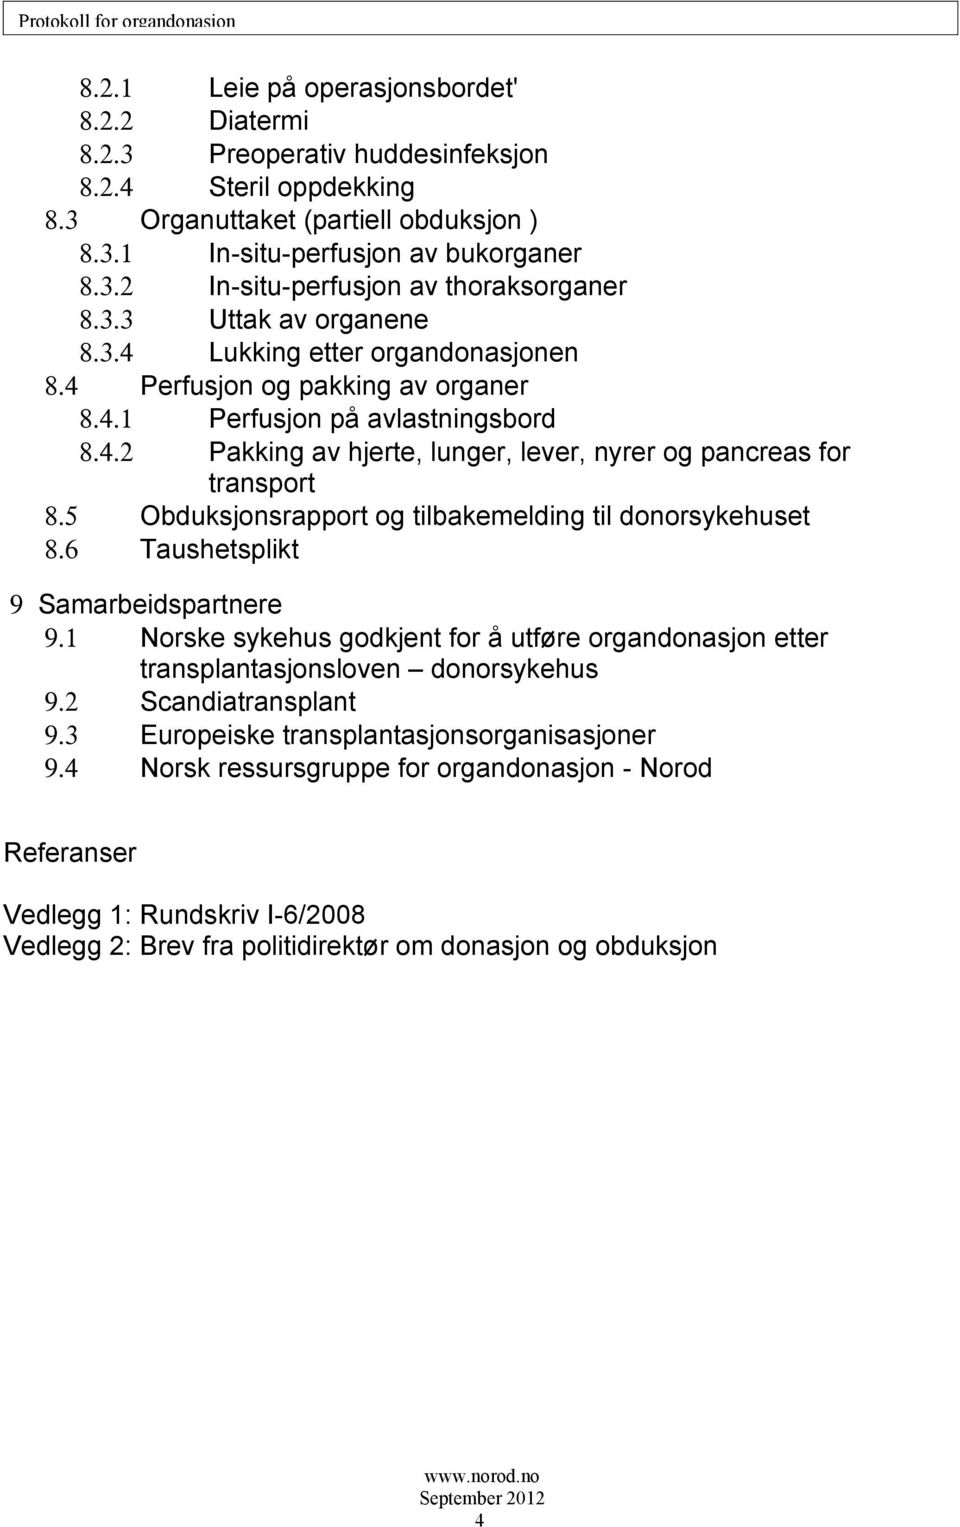 5 Obduksjonsrapport og tilbakemelding til donorsykehuset 8.6 Taushetsplikt 9 Samarbeidspartnere 9.1 Norske sykehus godkjent for å utføre organdonasjon etter transplantasjonsloven donorsykehus 9.